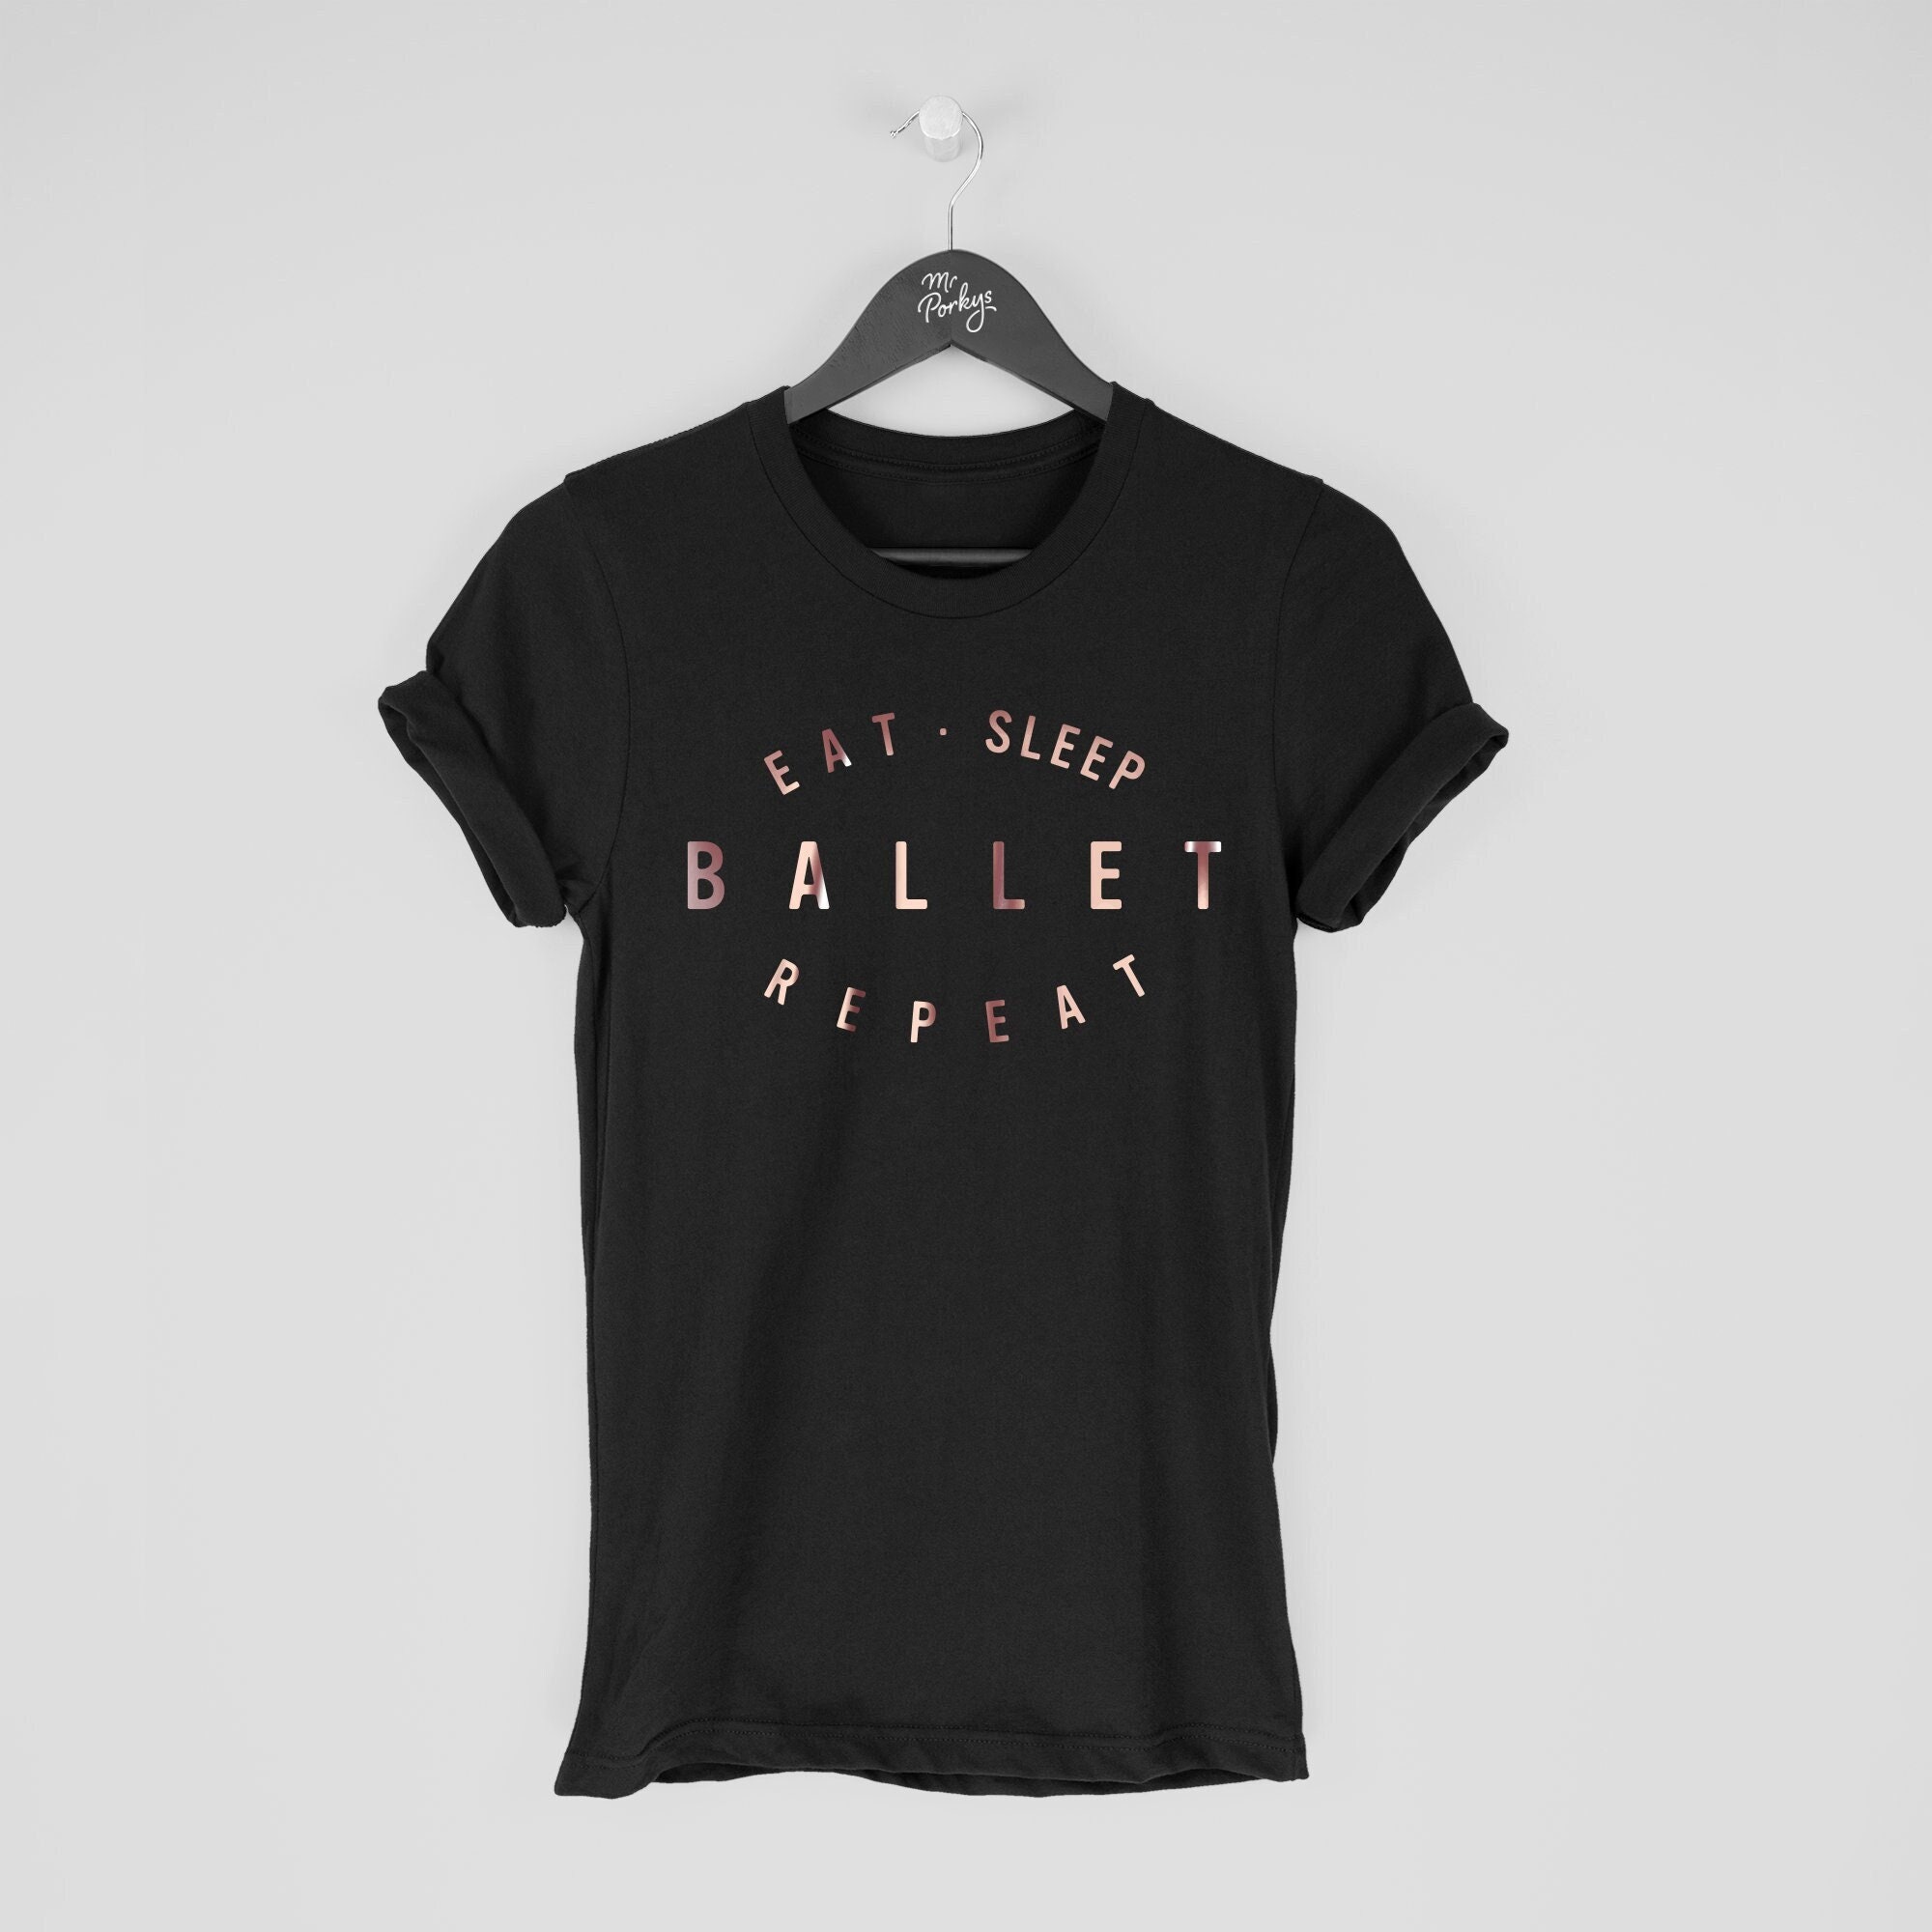 Ballet Shirt, T-Shirt, Dancer Gift, Eat Sleep Repeat T Shirt